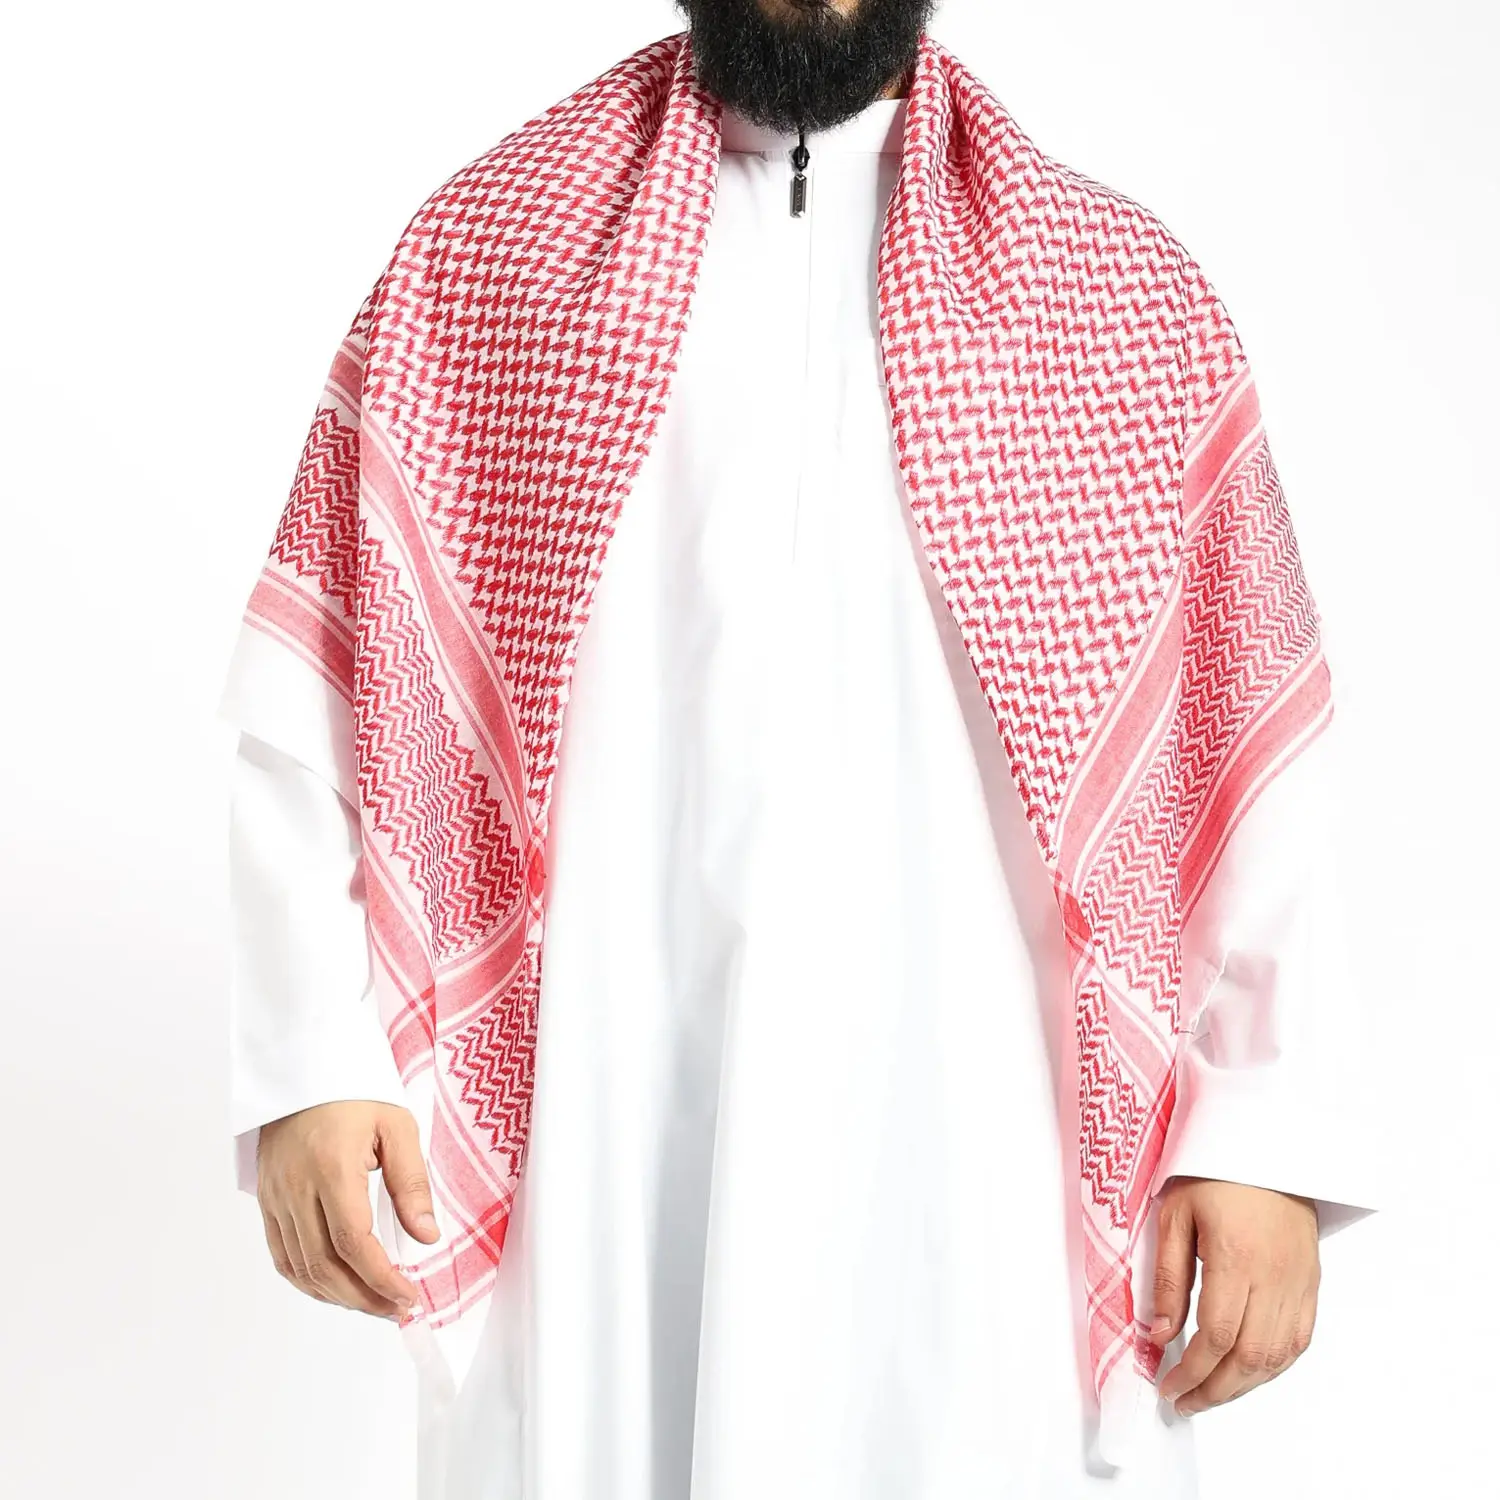 Klasik desen müslüman erkekler kırmızı arap büyük kare filistin eşarp Shemagh tasarımlar pamuk başörtüsü Keffiyeh